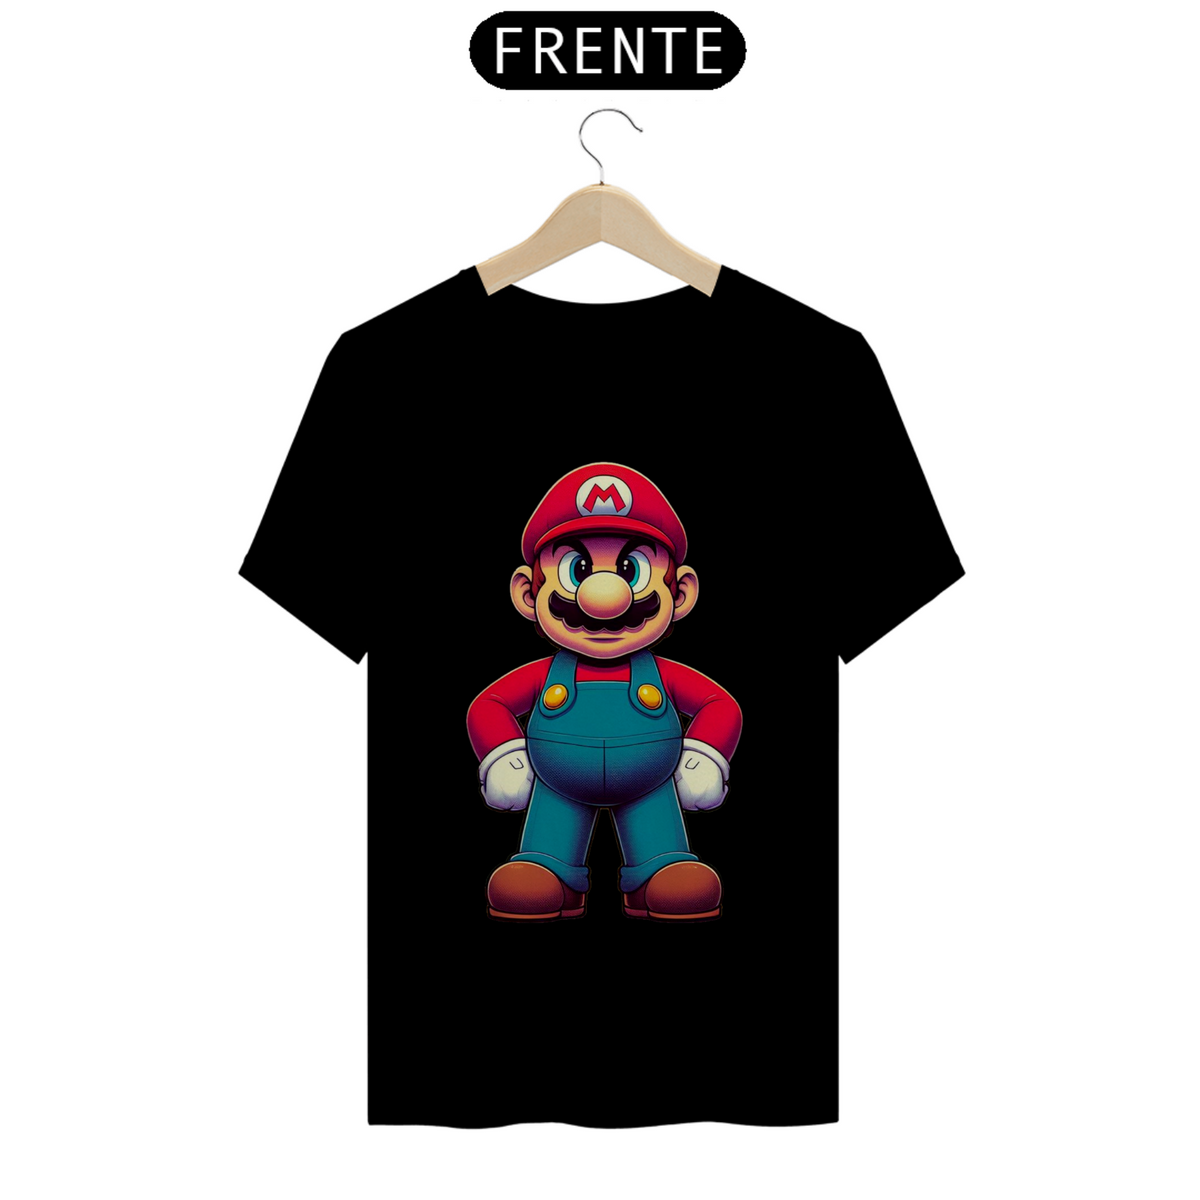 Nome do produto: T-Shirt Mario Bros